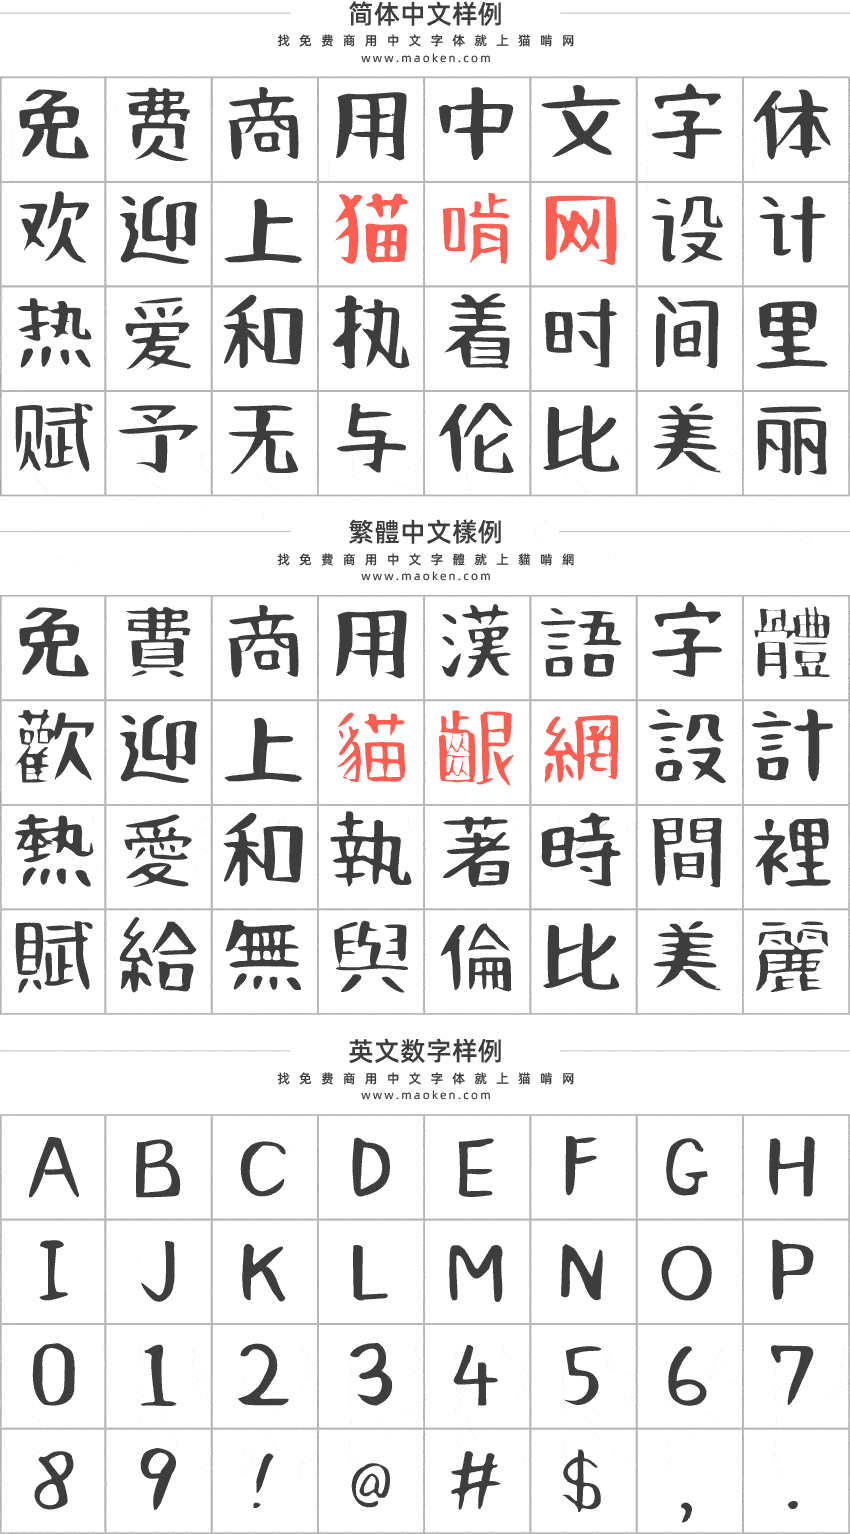 何某手写体 一款随心所欲充满趣味的日系手写字体免费商用 猫啃网 免费商用中文字体下载